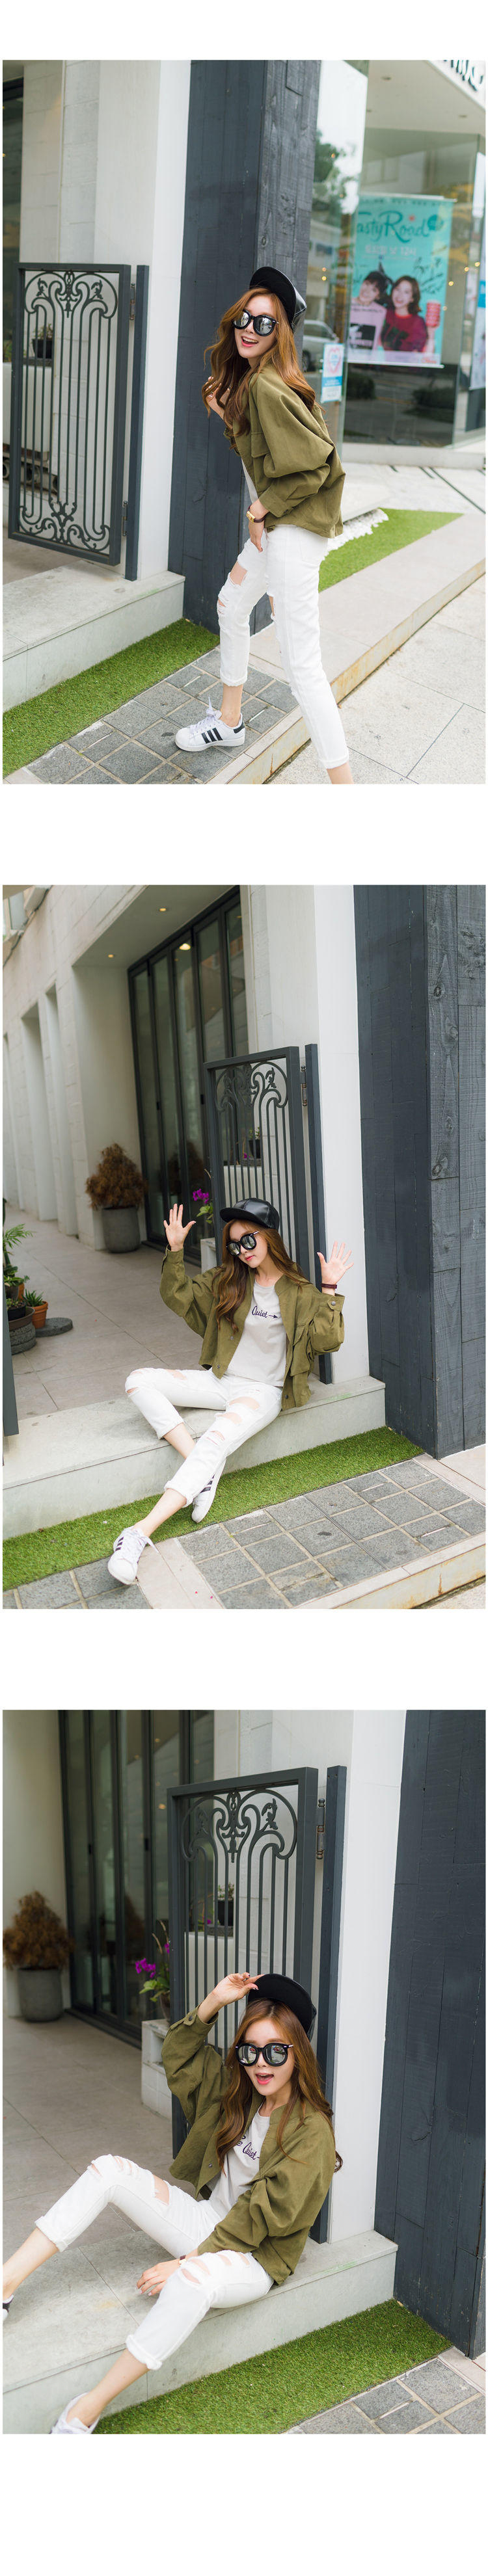 JEANE-SUNP2016春季新品韩版时尚气质风衣女短款宽松显瘦薄款休闲百搭外套潮